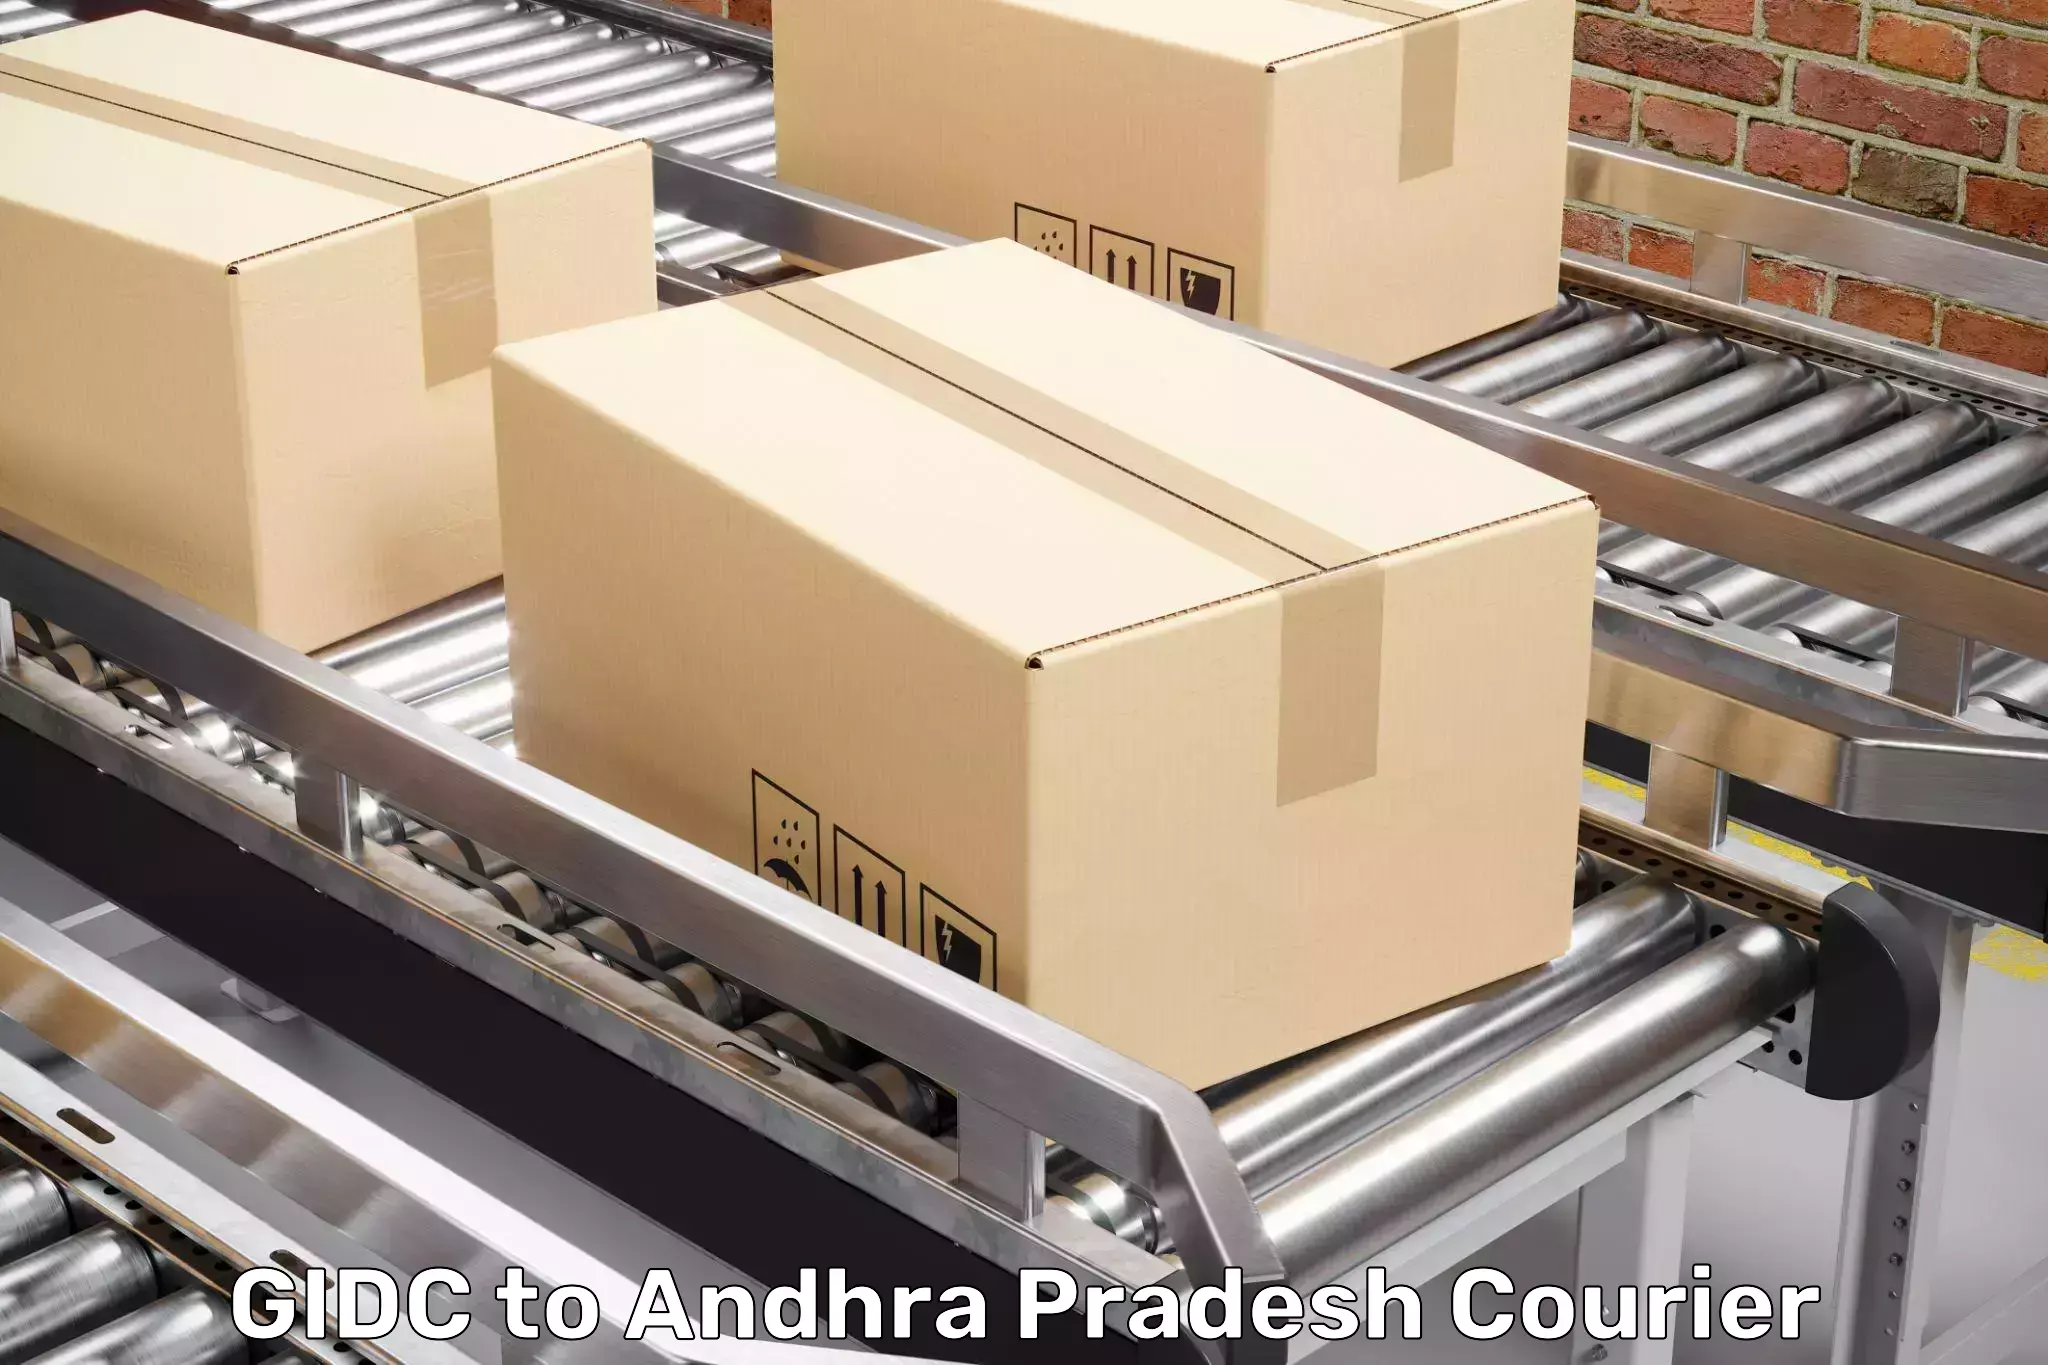 Skilled furniture transporters GIDC to Andhra Pradesh